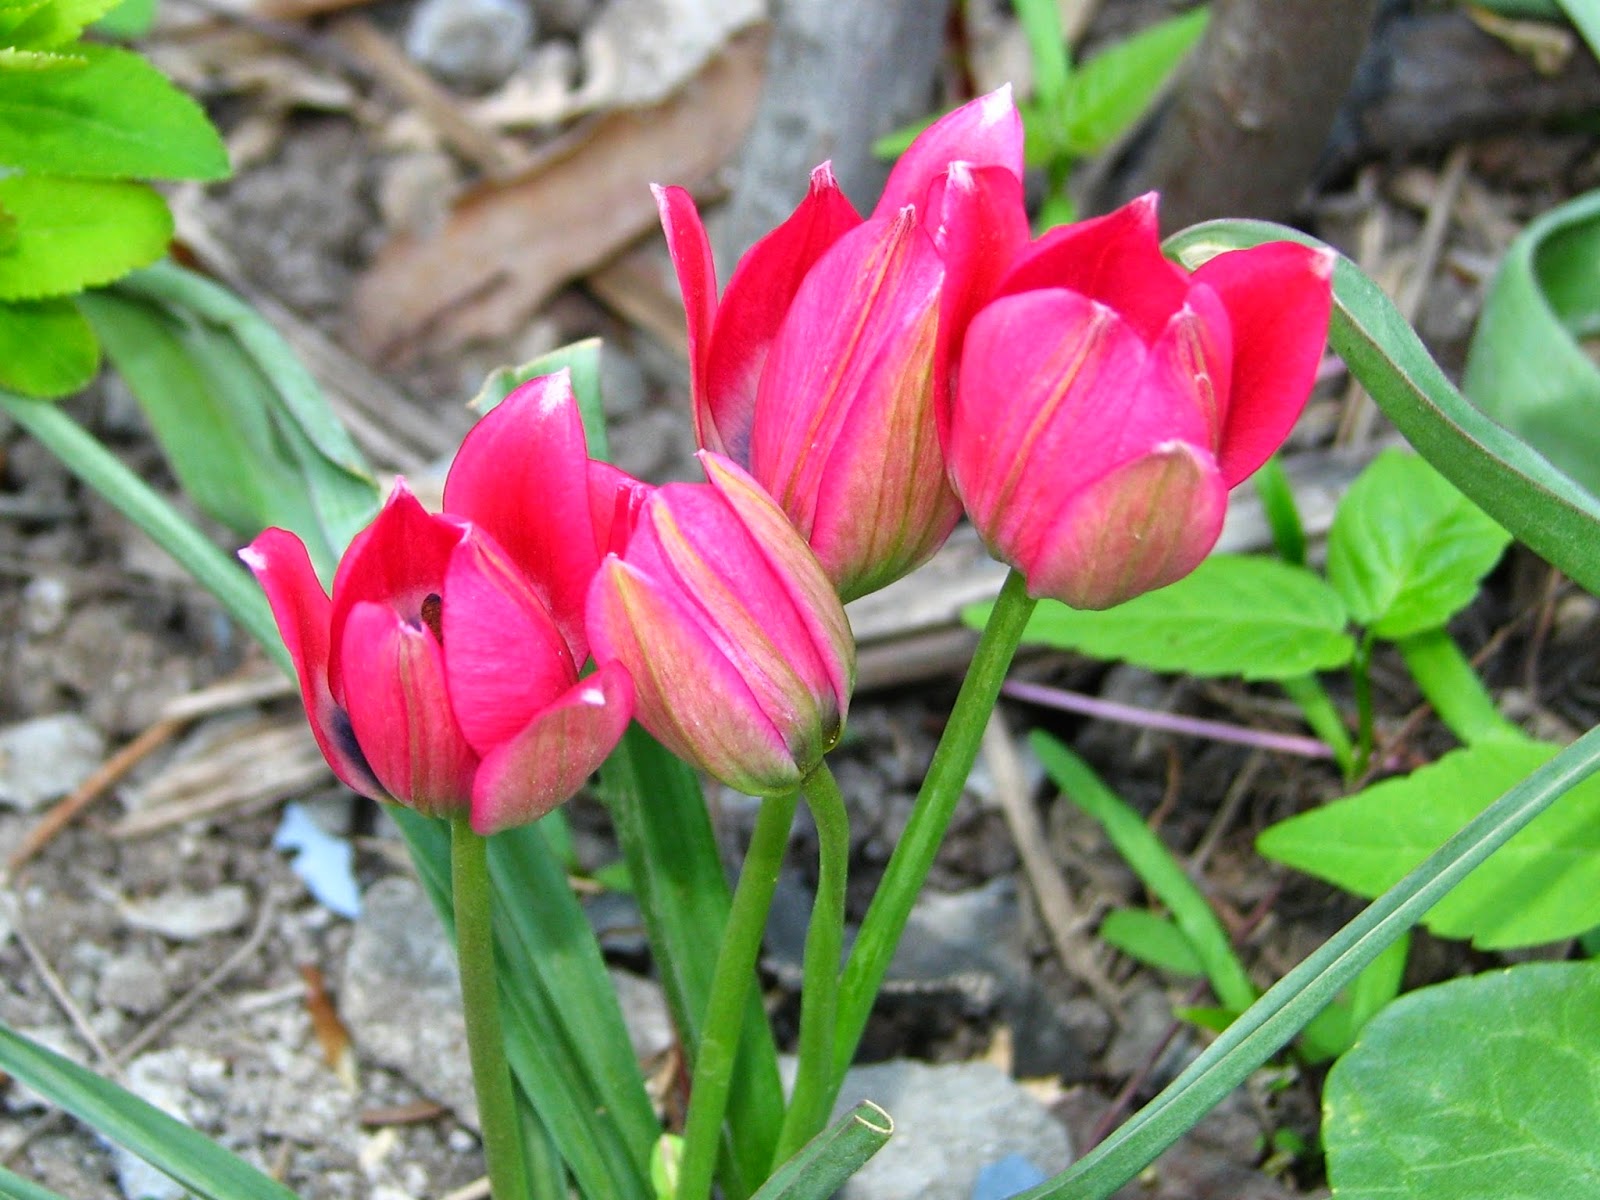  indah dan mempunyai beraneka warna hijau Manfaat dan Khasiat Bunga Tulip 